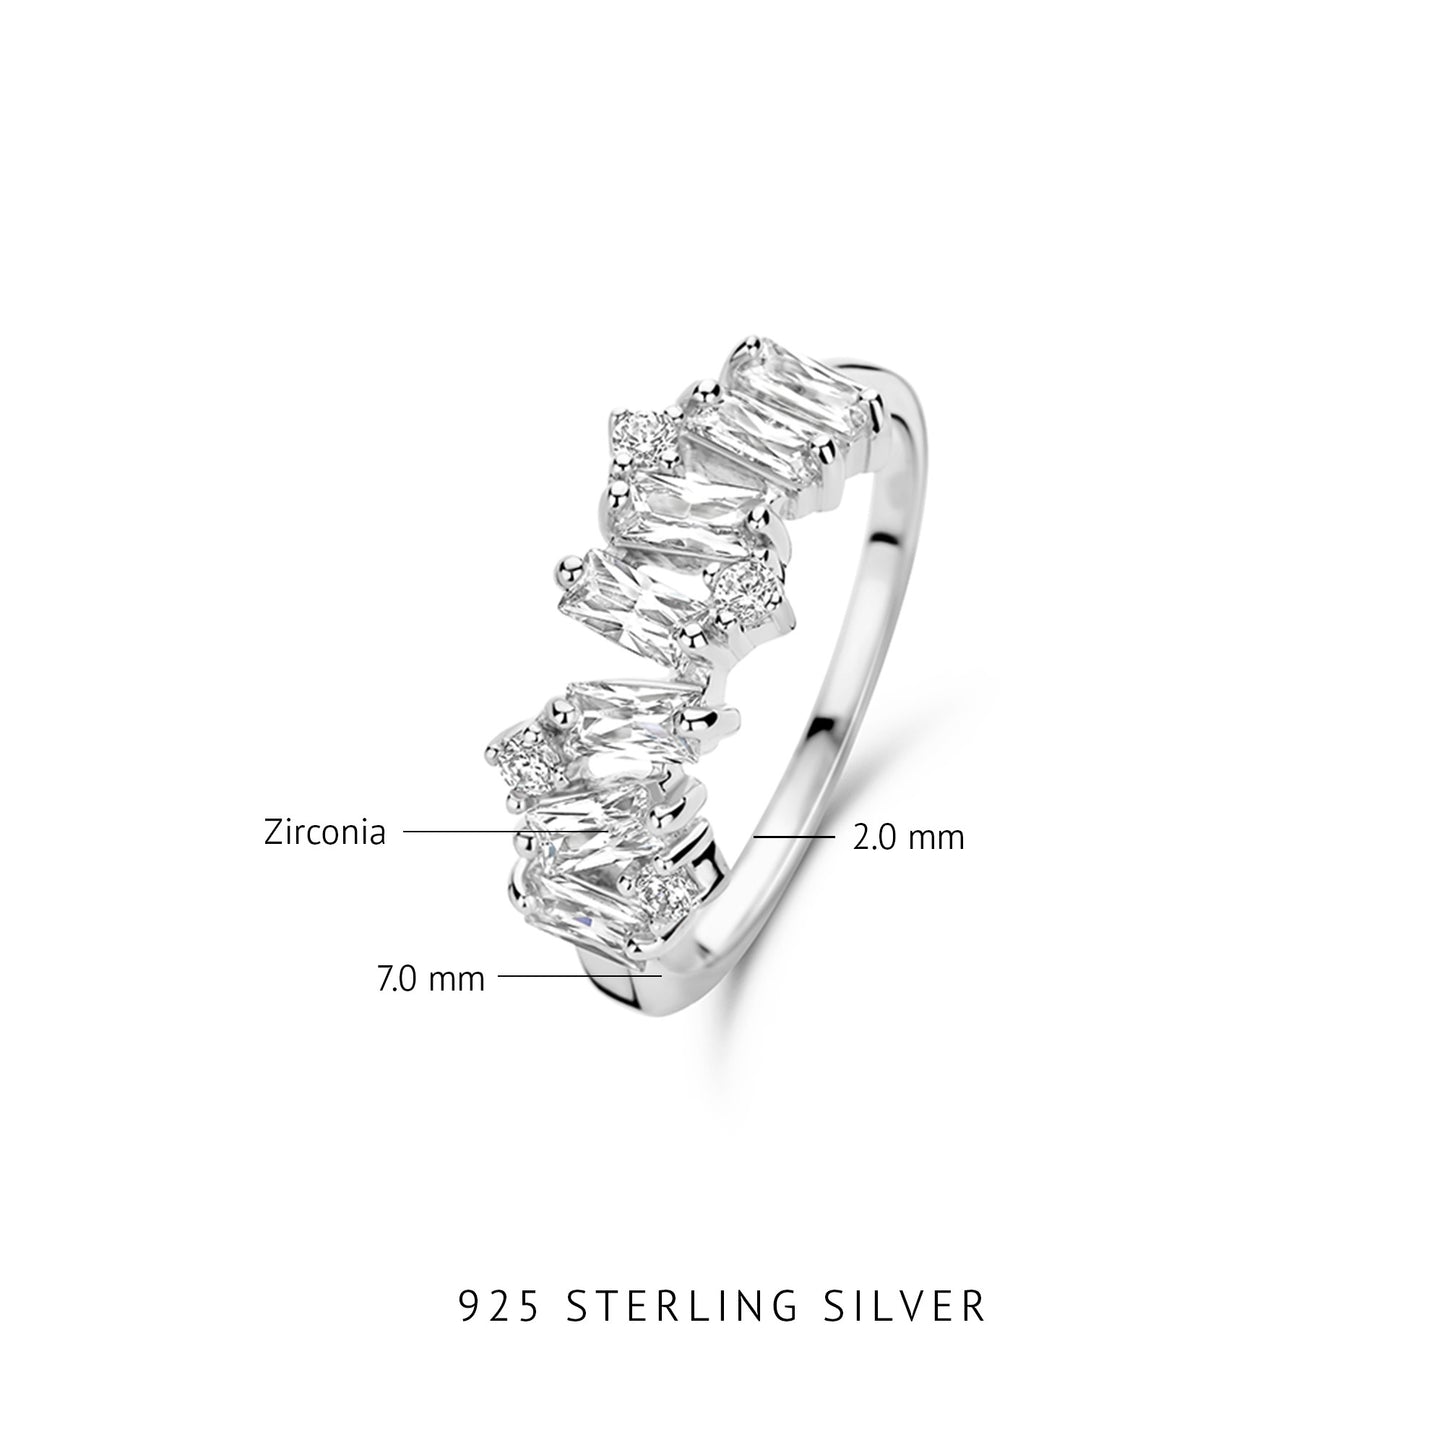 Santa Maria della Base 925 sterling sølv ring med zirconia sten